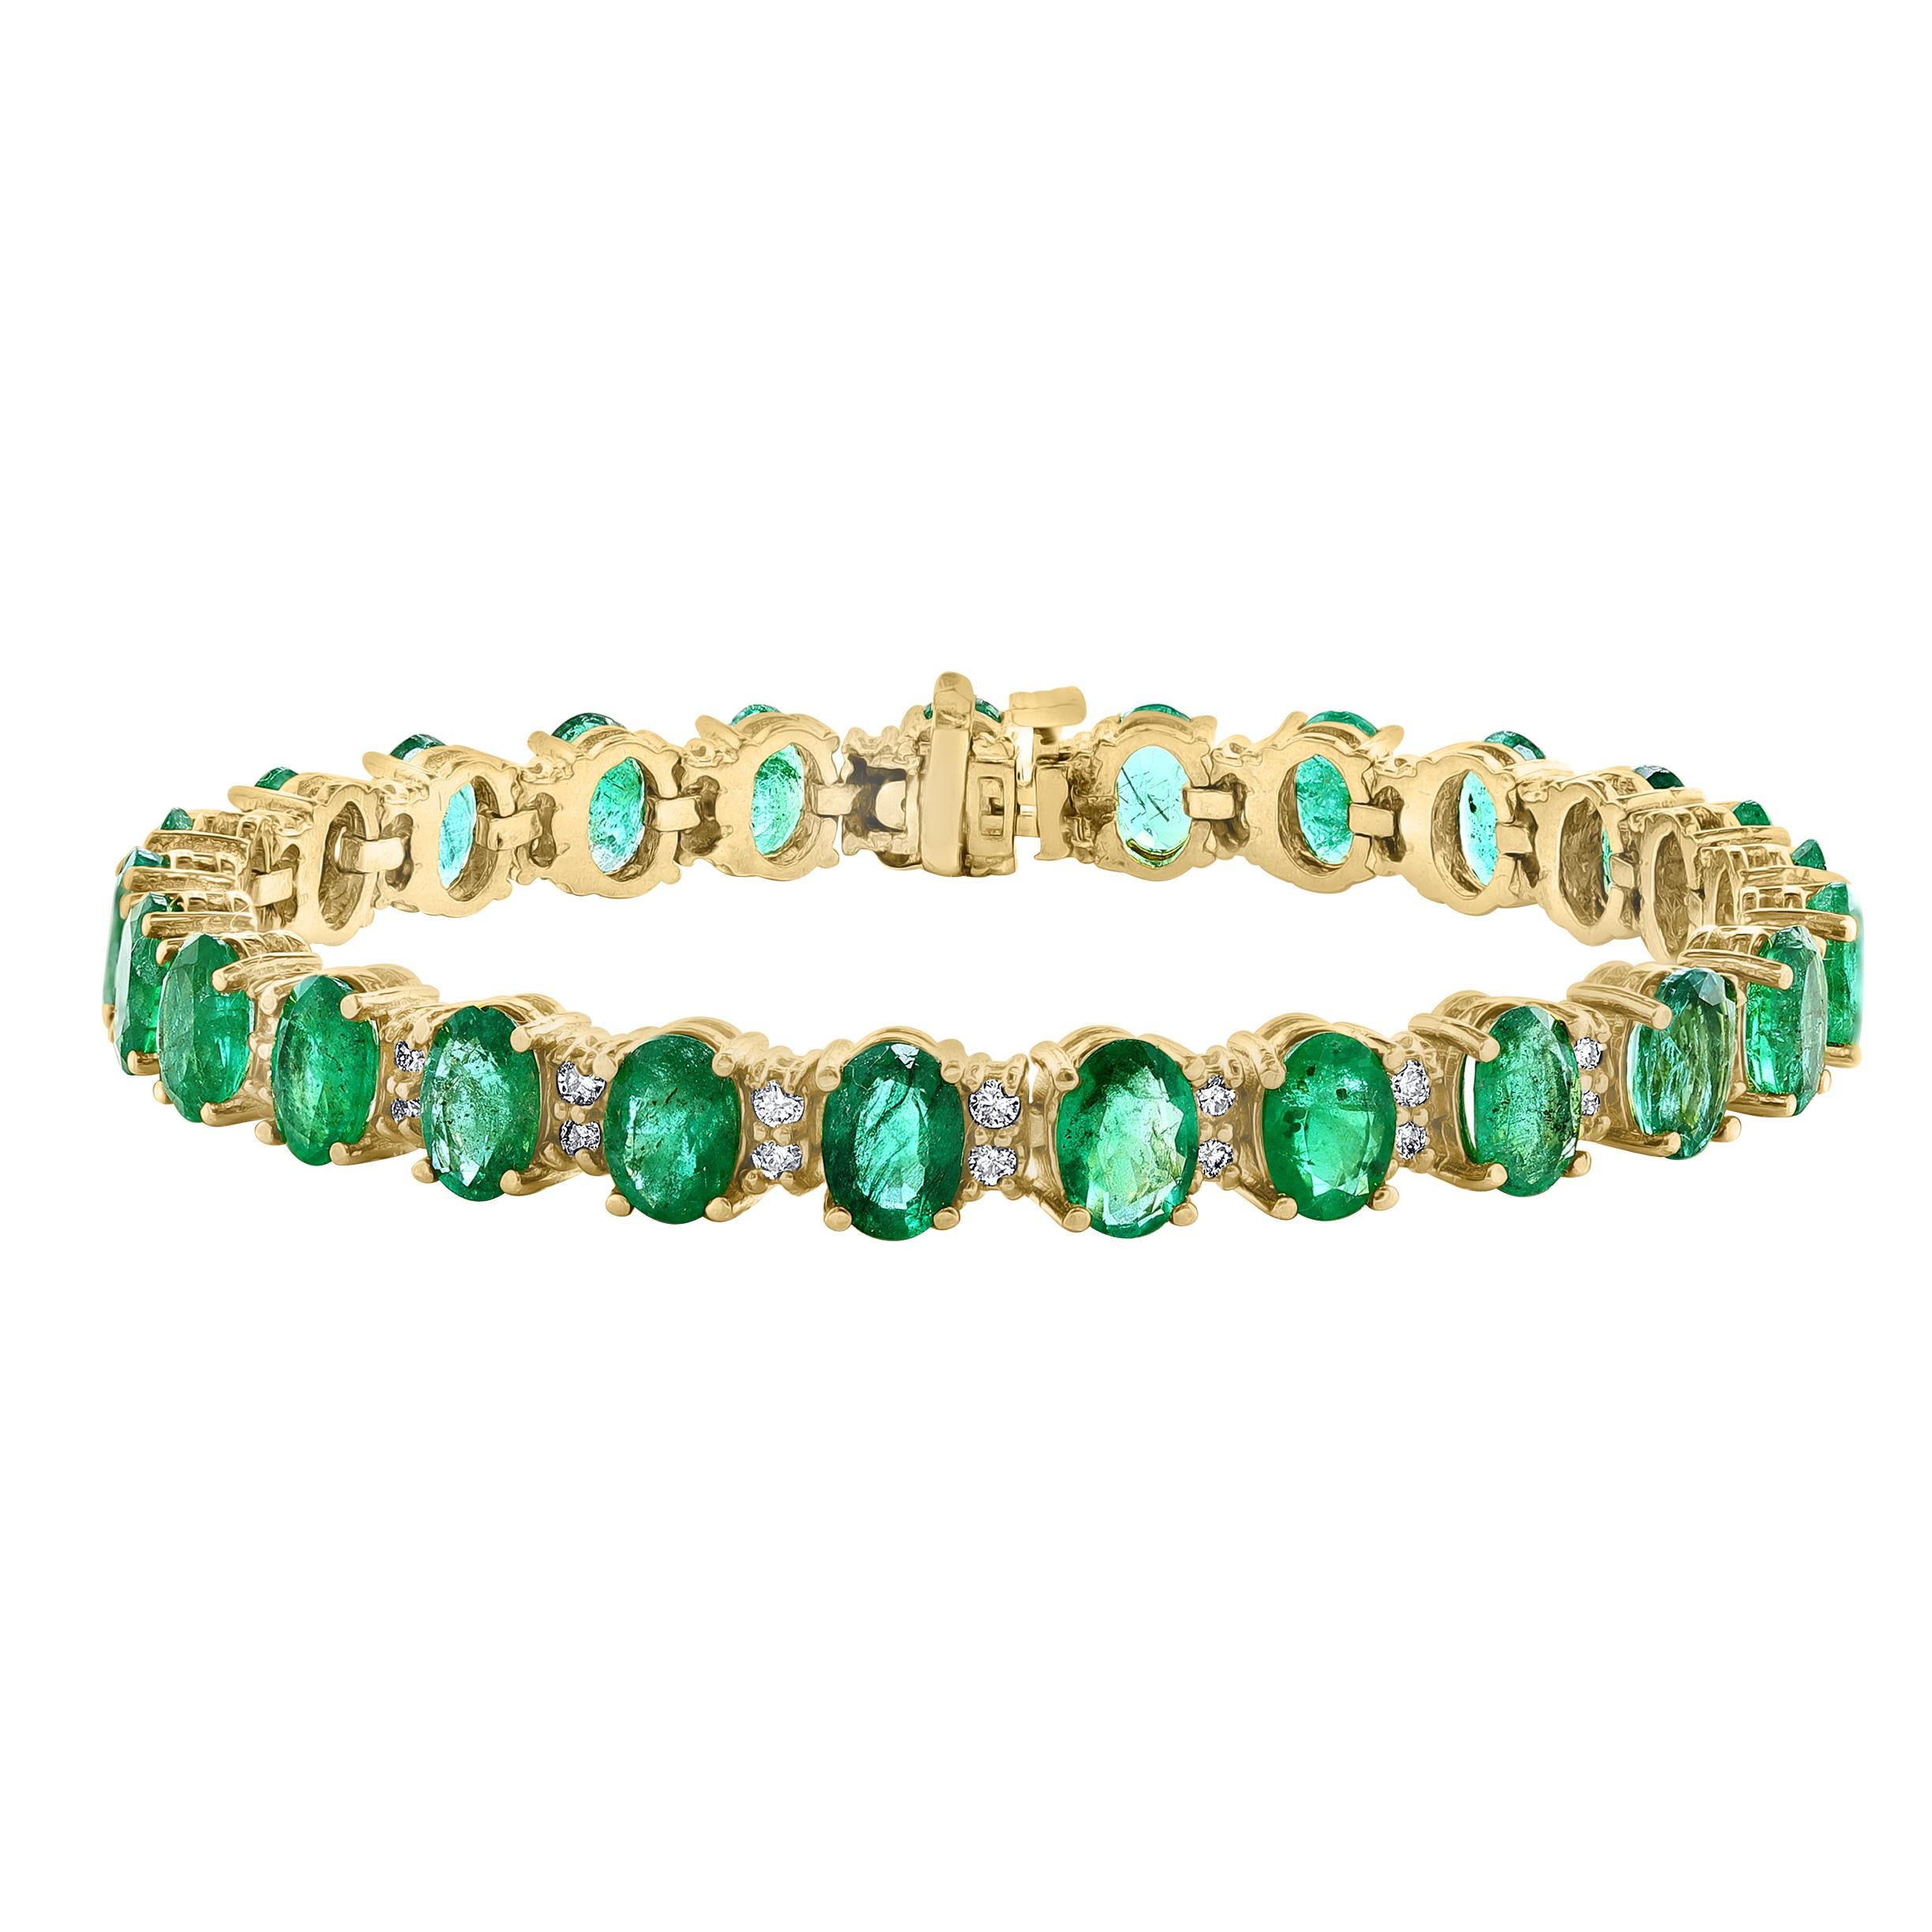  Dieses außergewöhnlich günstige Tennis  Armband hat  25 Steine aus  Natürlich  ovale Form   Smaragde  . Jeder Smaragd ist durch zwei Diamanten getrennt, das Gesamtgewicht des Smaragds beträgt  ca. 25 Karat . Die Gesamtzahl der Diamanten beträgt 50